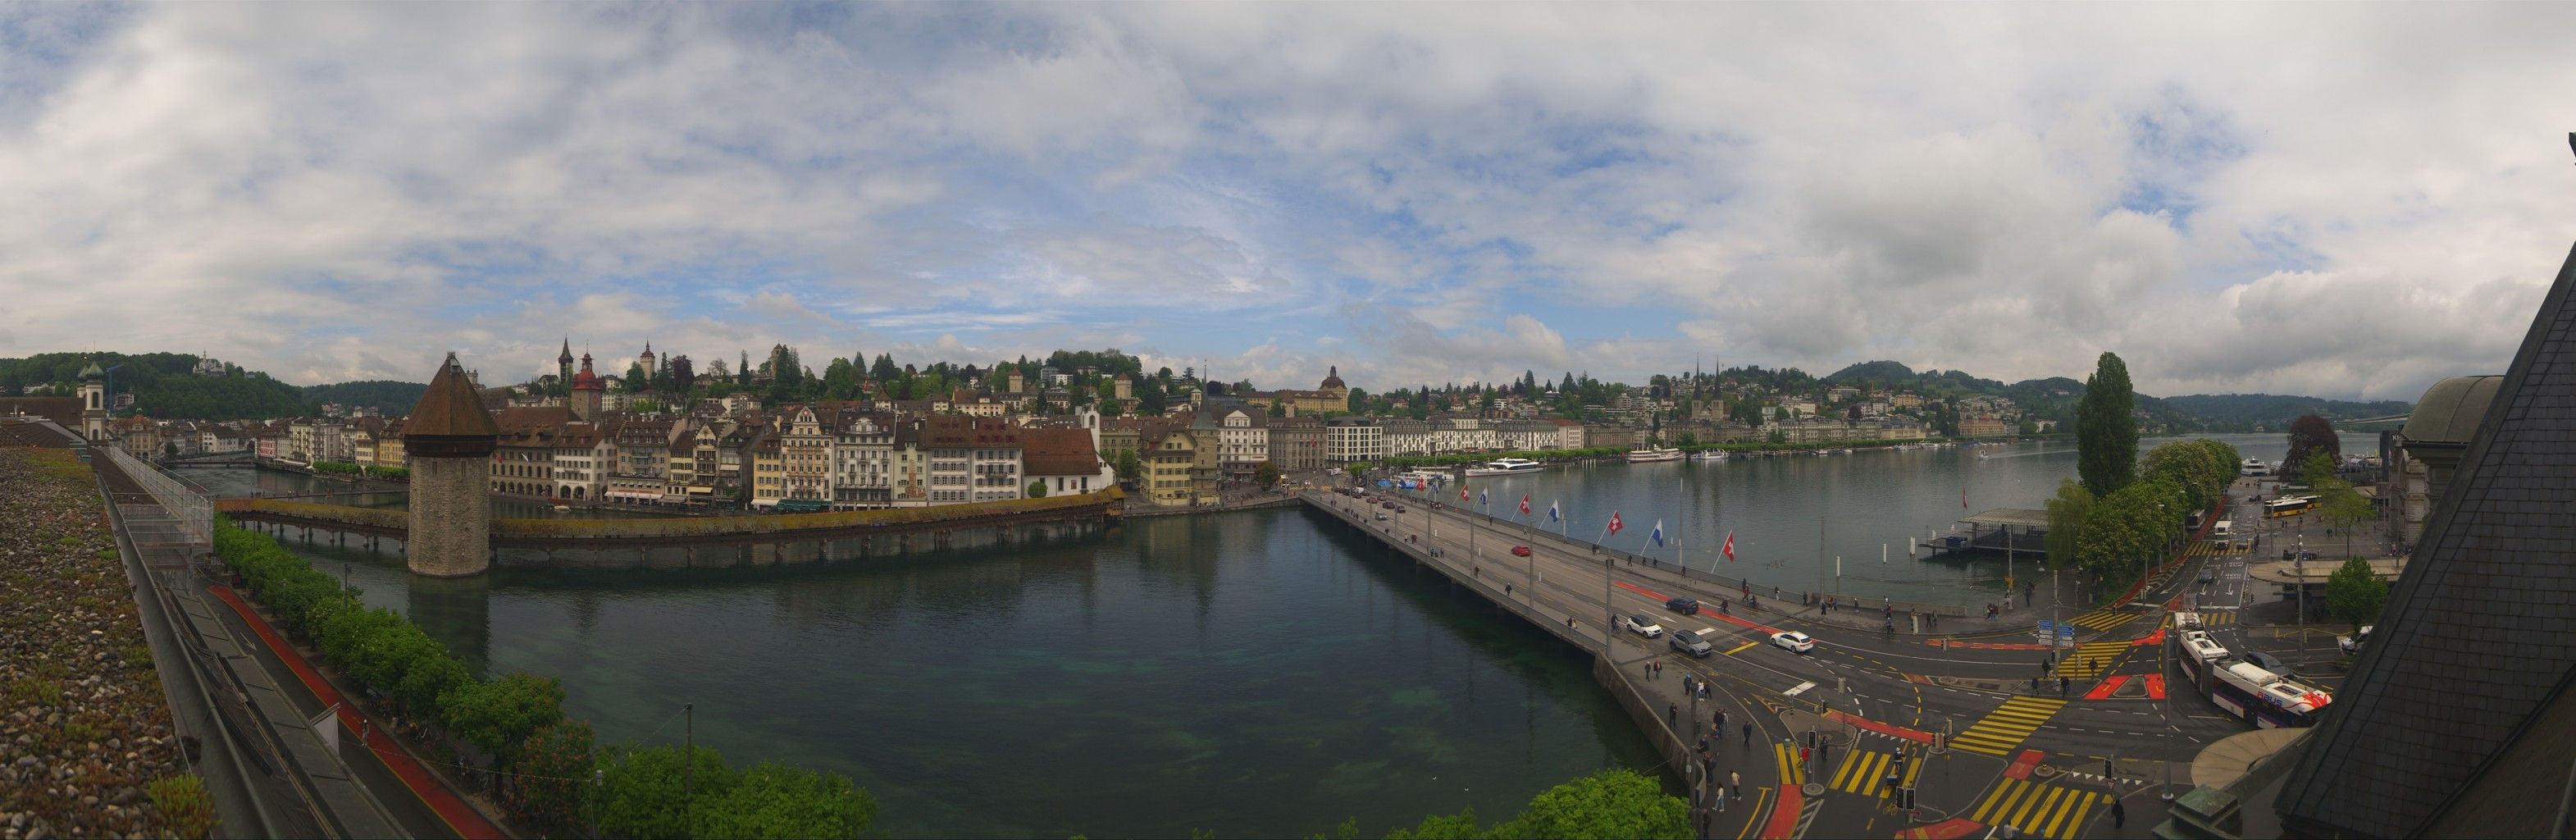 Luzern: Kapellbrücke